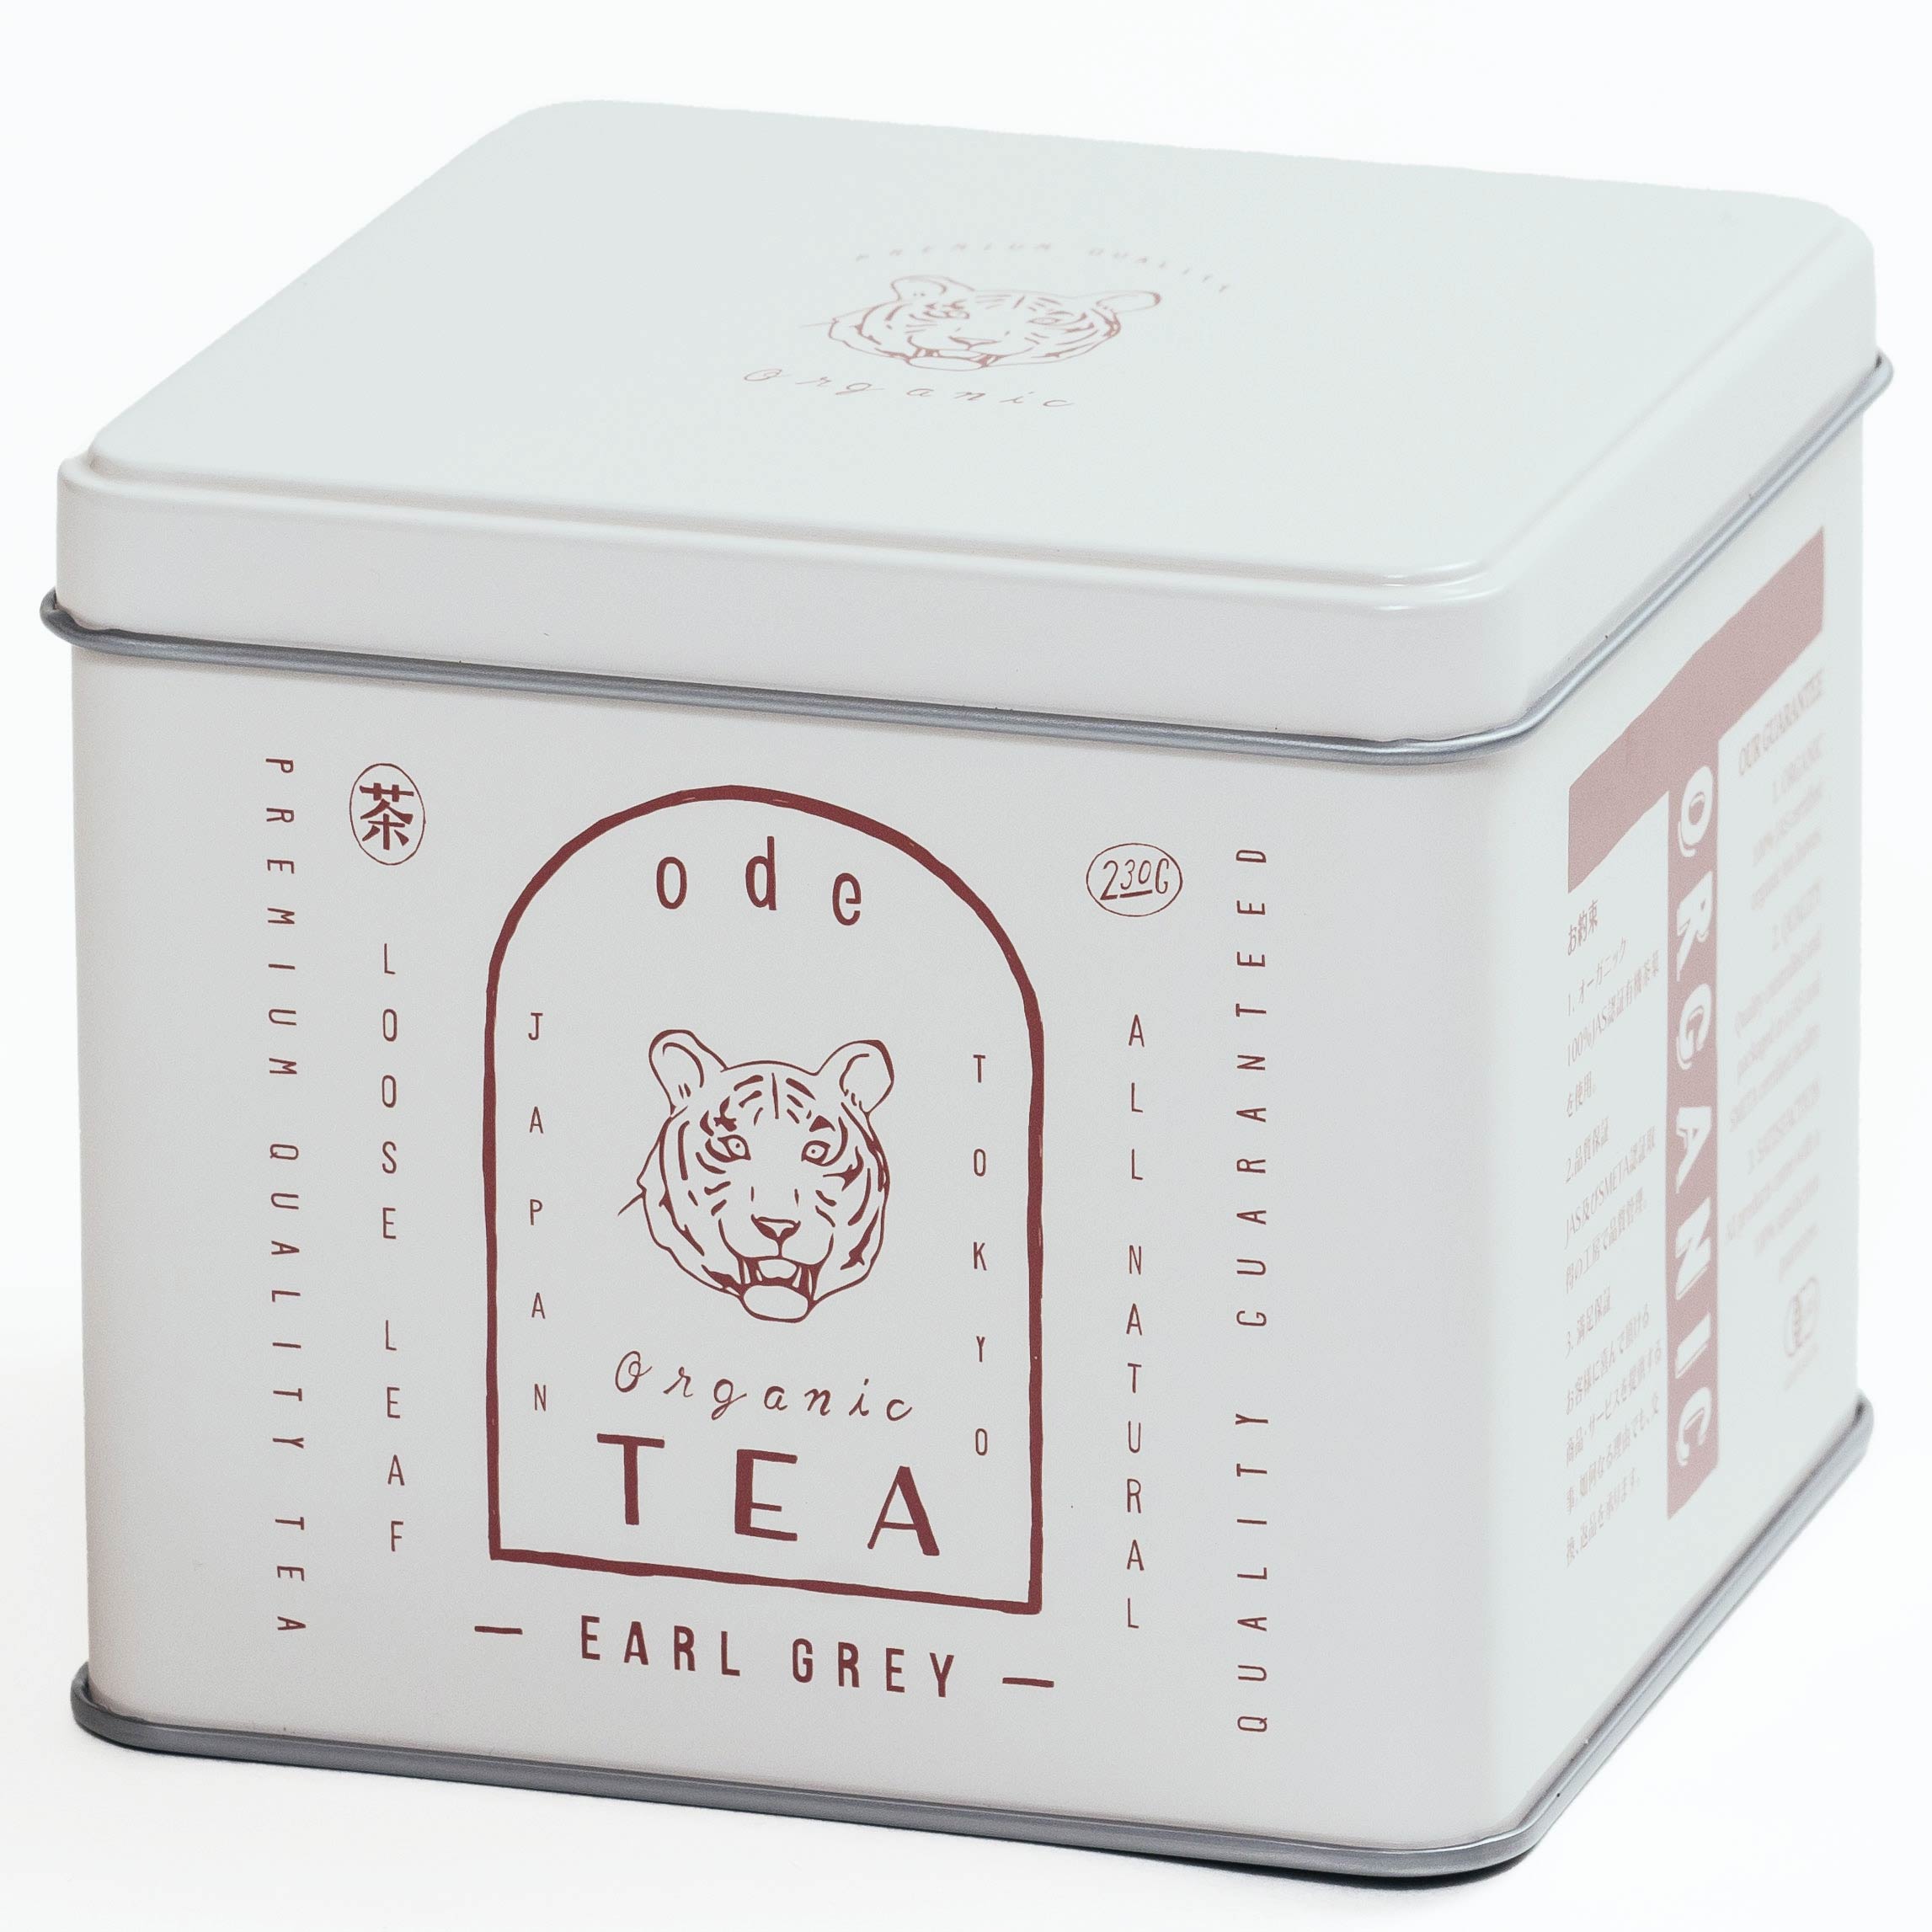 オーガニック ベストセラー アールグレイ 「ode」ルースリーフ 紅茶 ベルガモット風味 可愛い缶 Organic Tea Earl Grey Loose Leaf 230g by TOKYO COFFEE